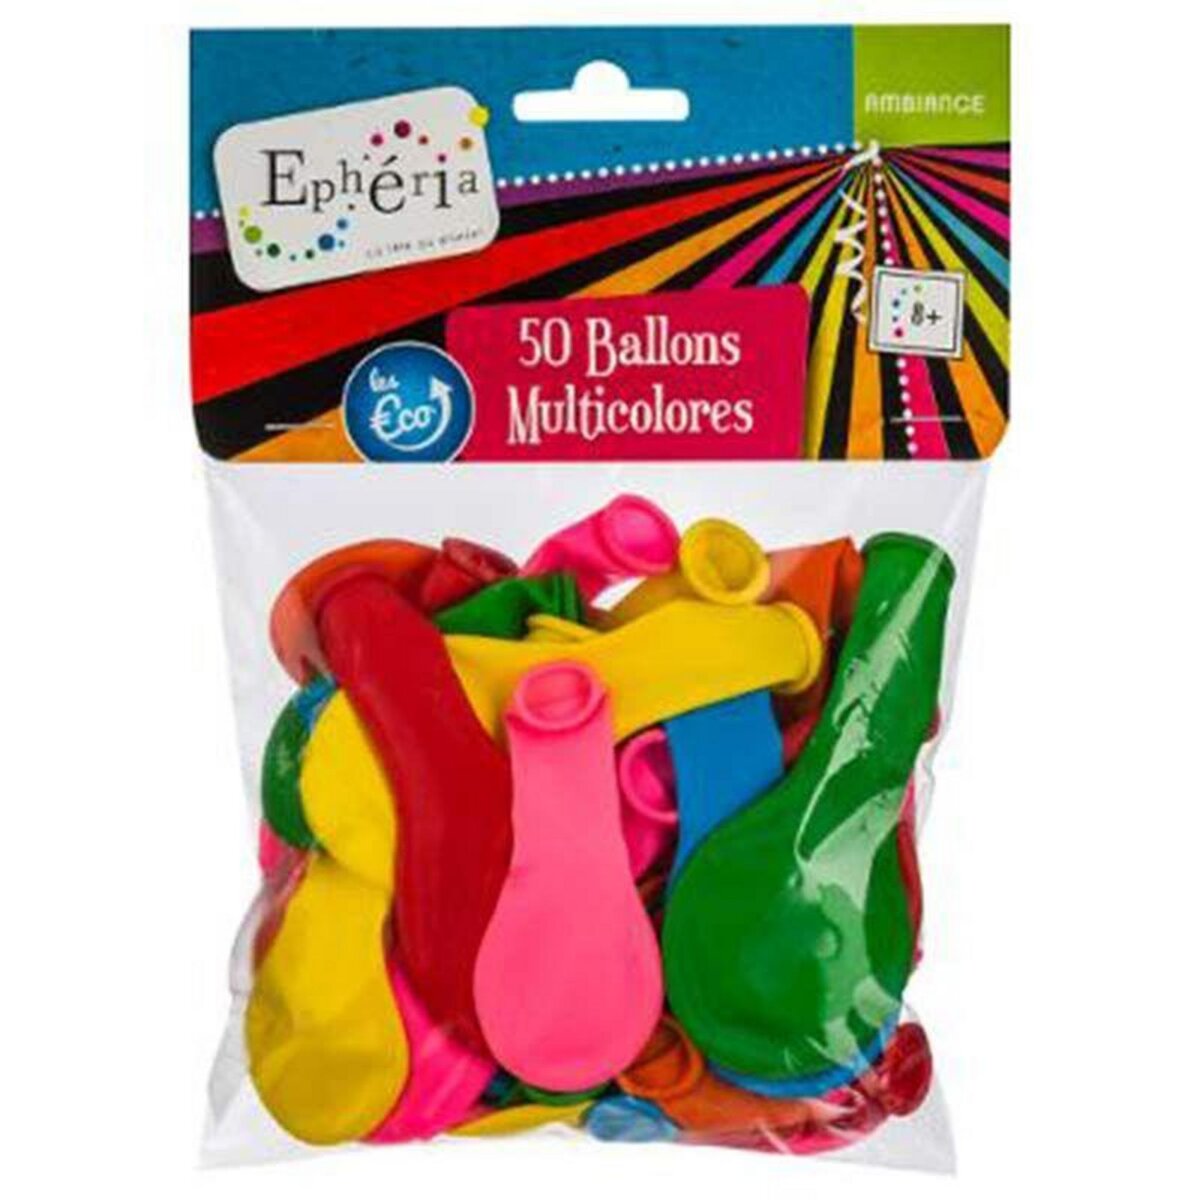  Lot de 50 Ballons Gonflables  Ephéria  20cm Multicolore